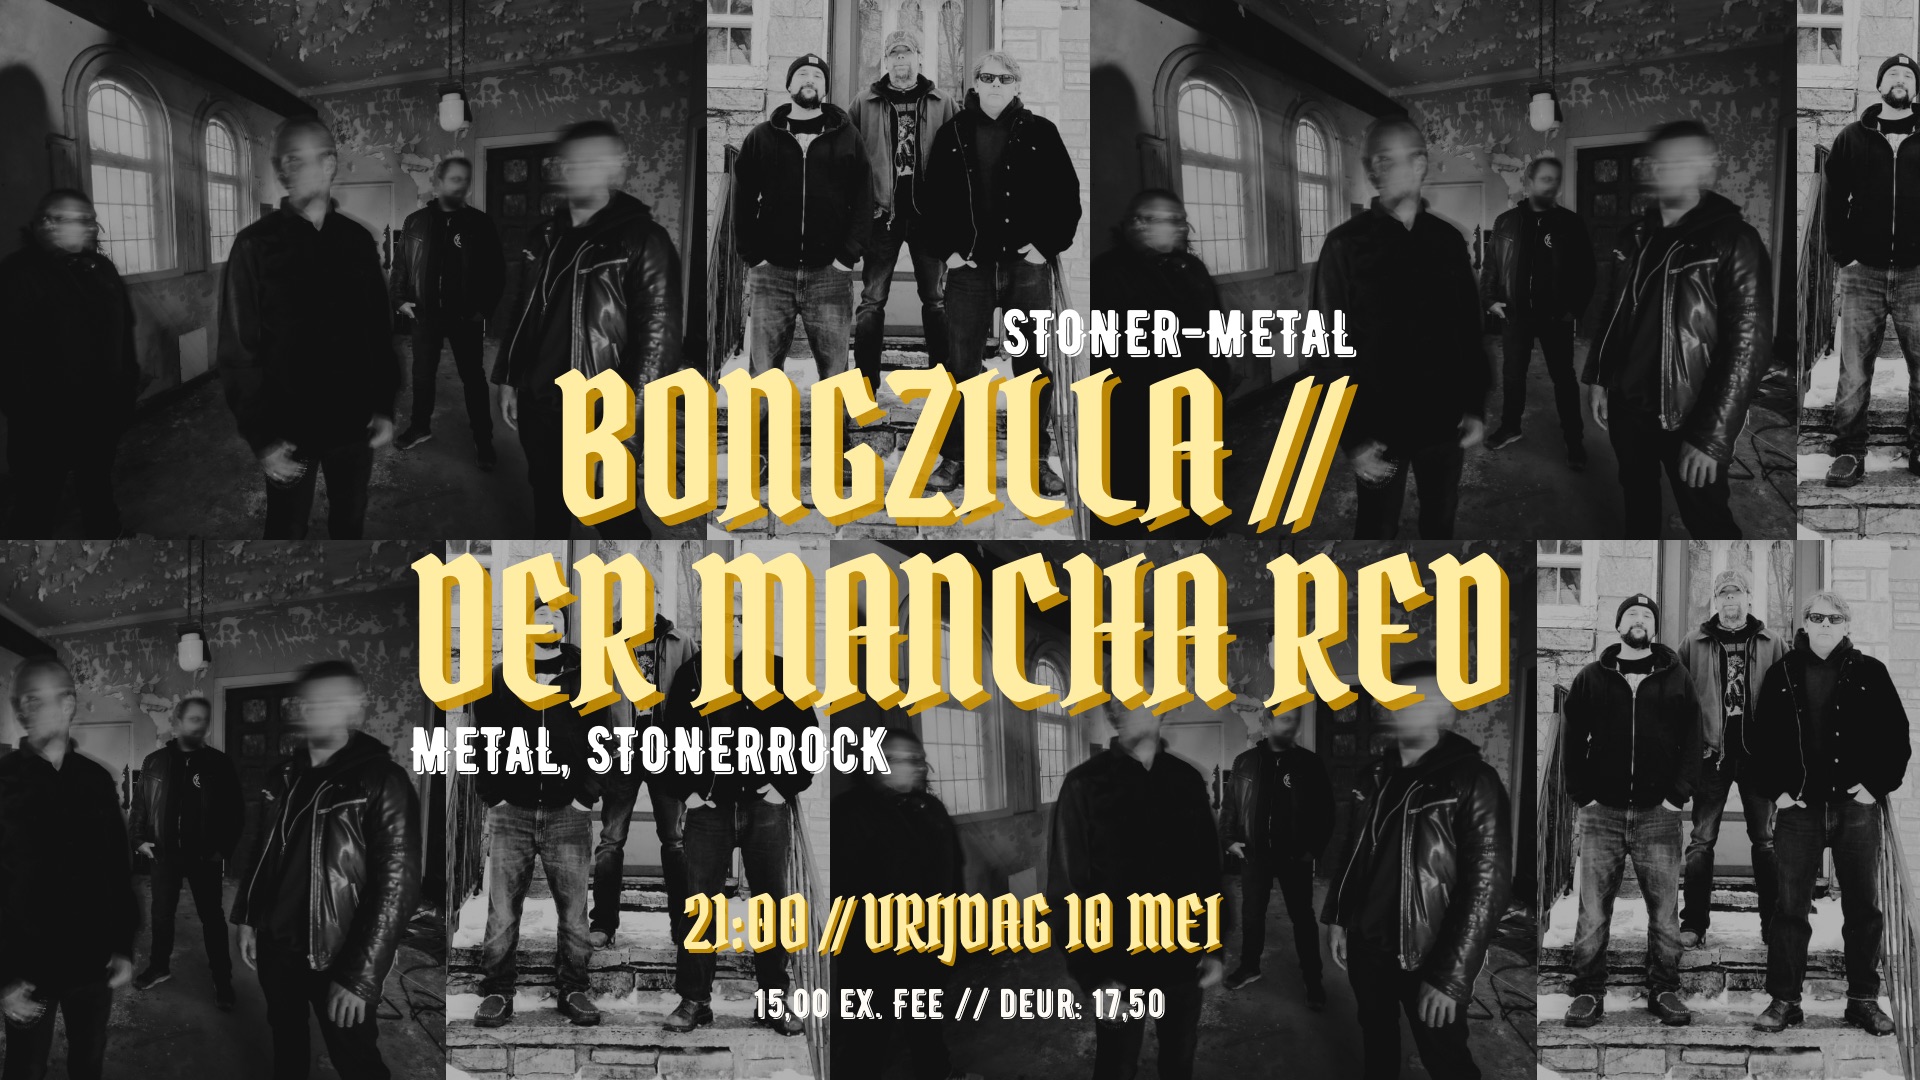 Bongzilla + Der Mancha Red header